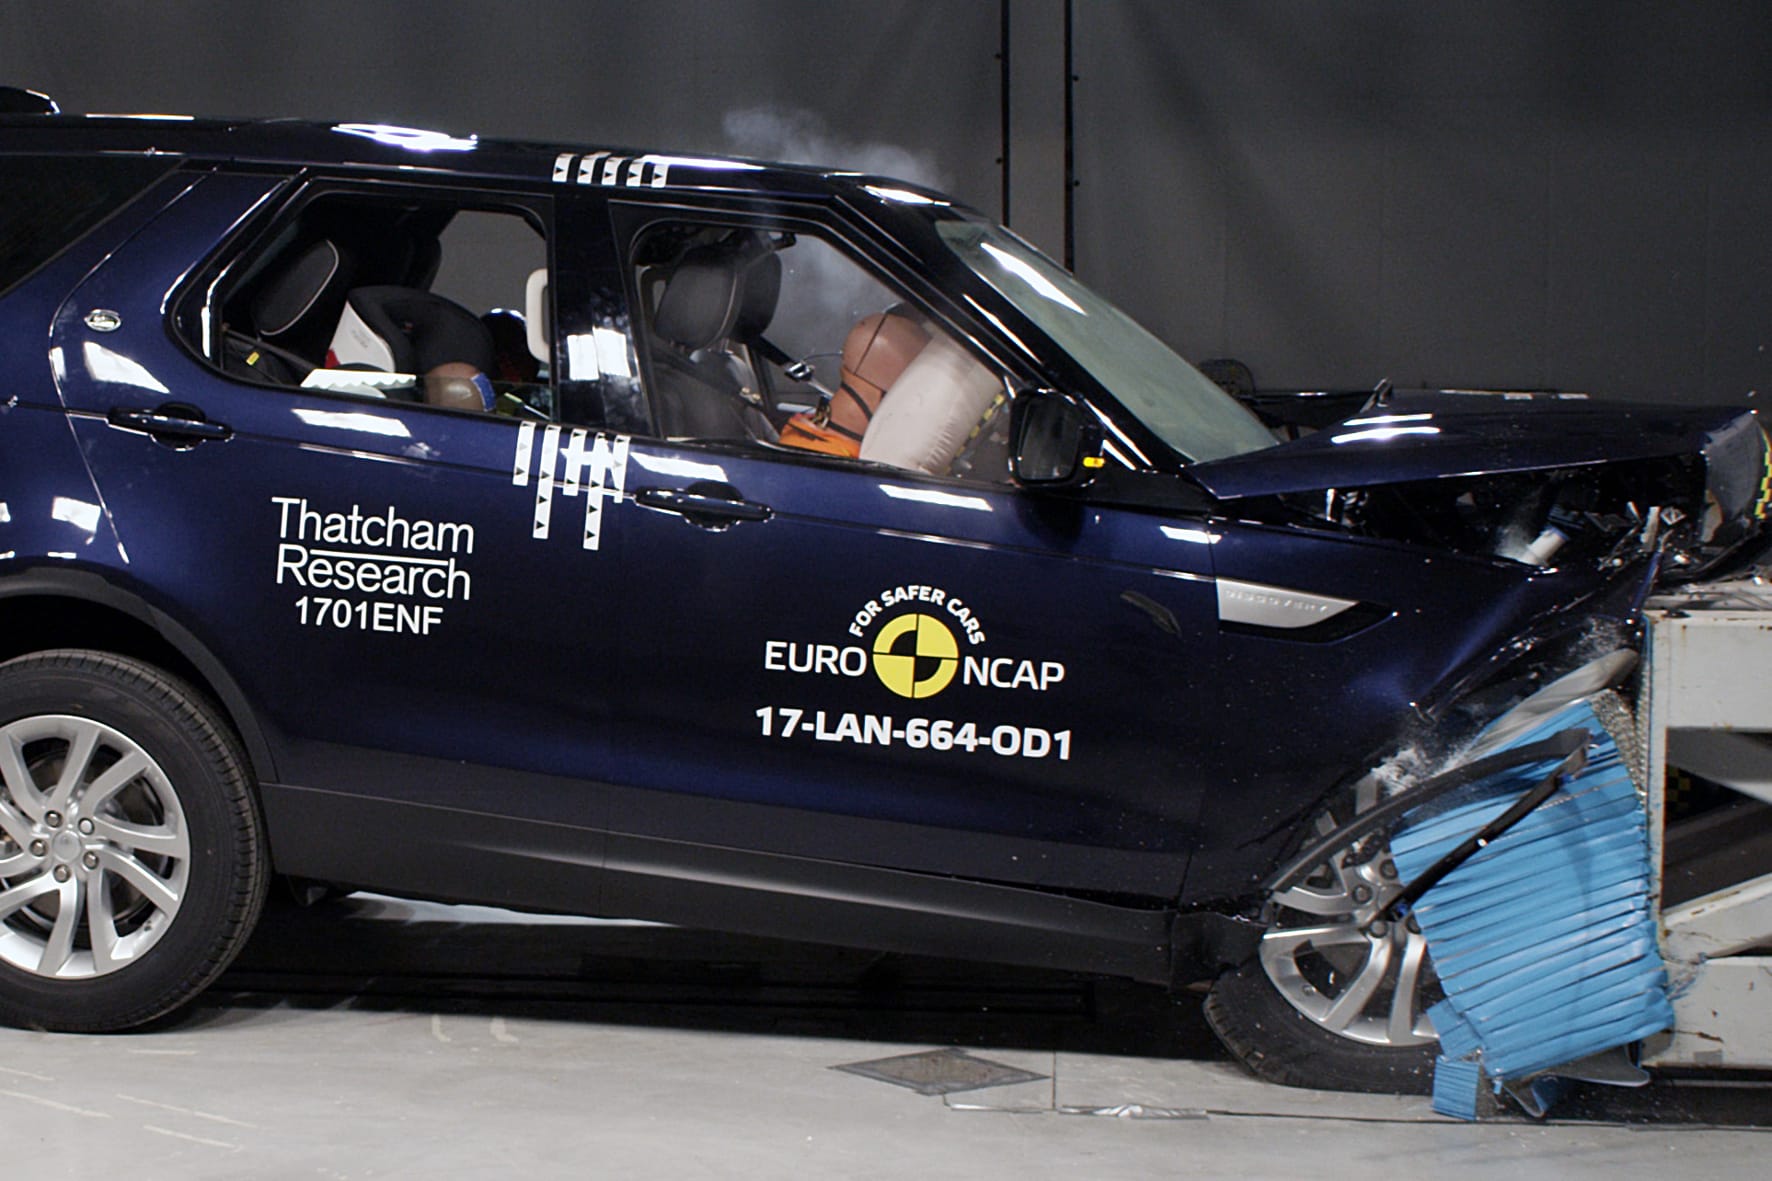 Euro-NCAP: Der neue Land Rover Discovery erhält mit fünf Sternen die Bestnote im Crashtest.